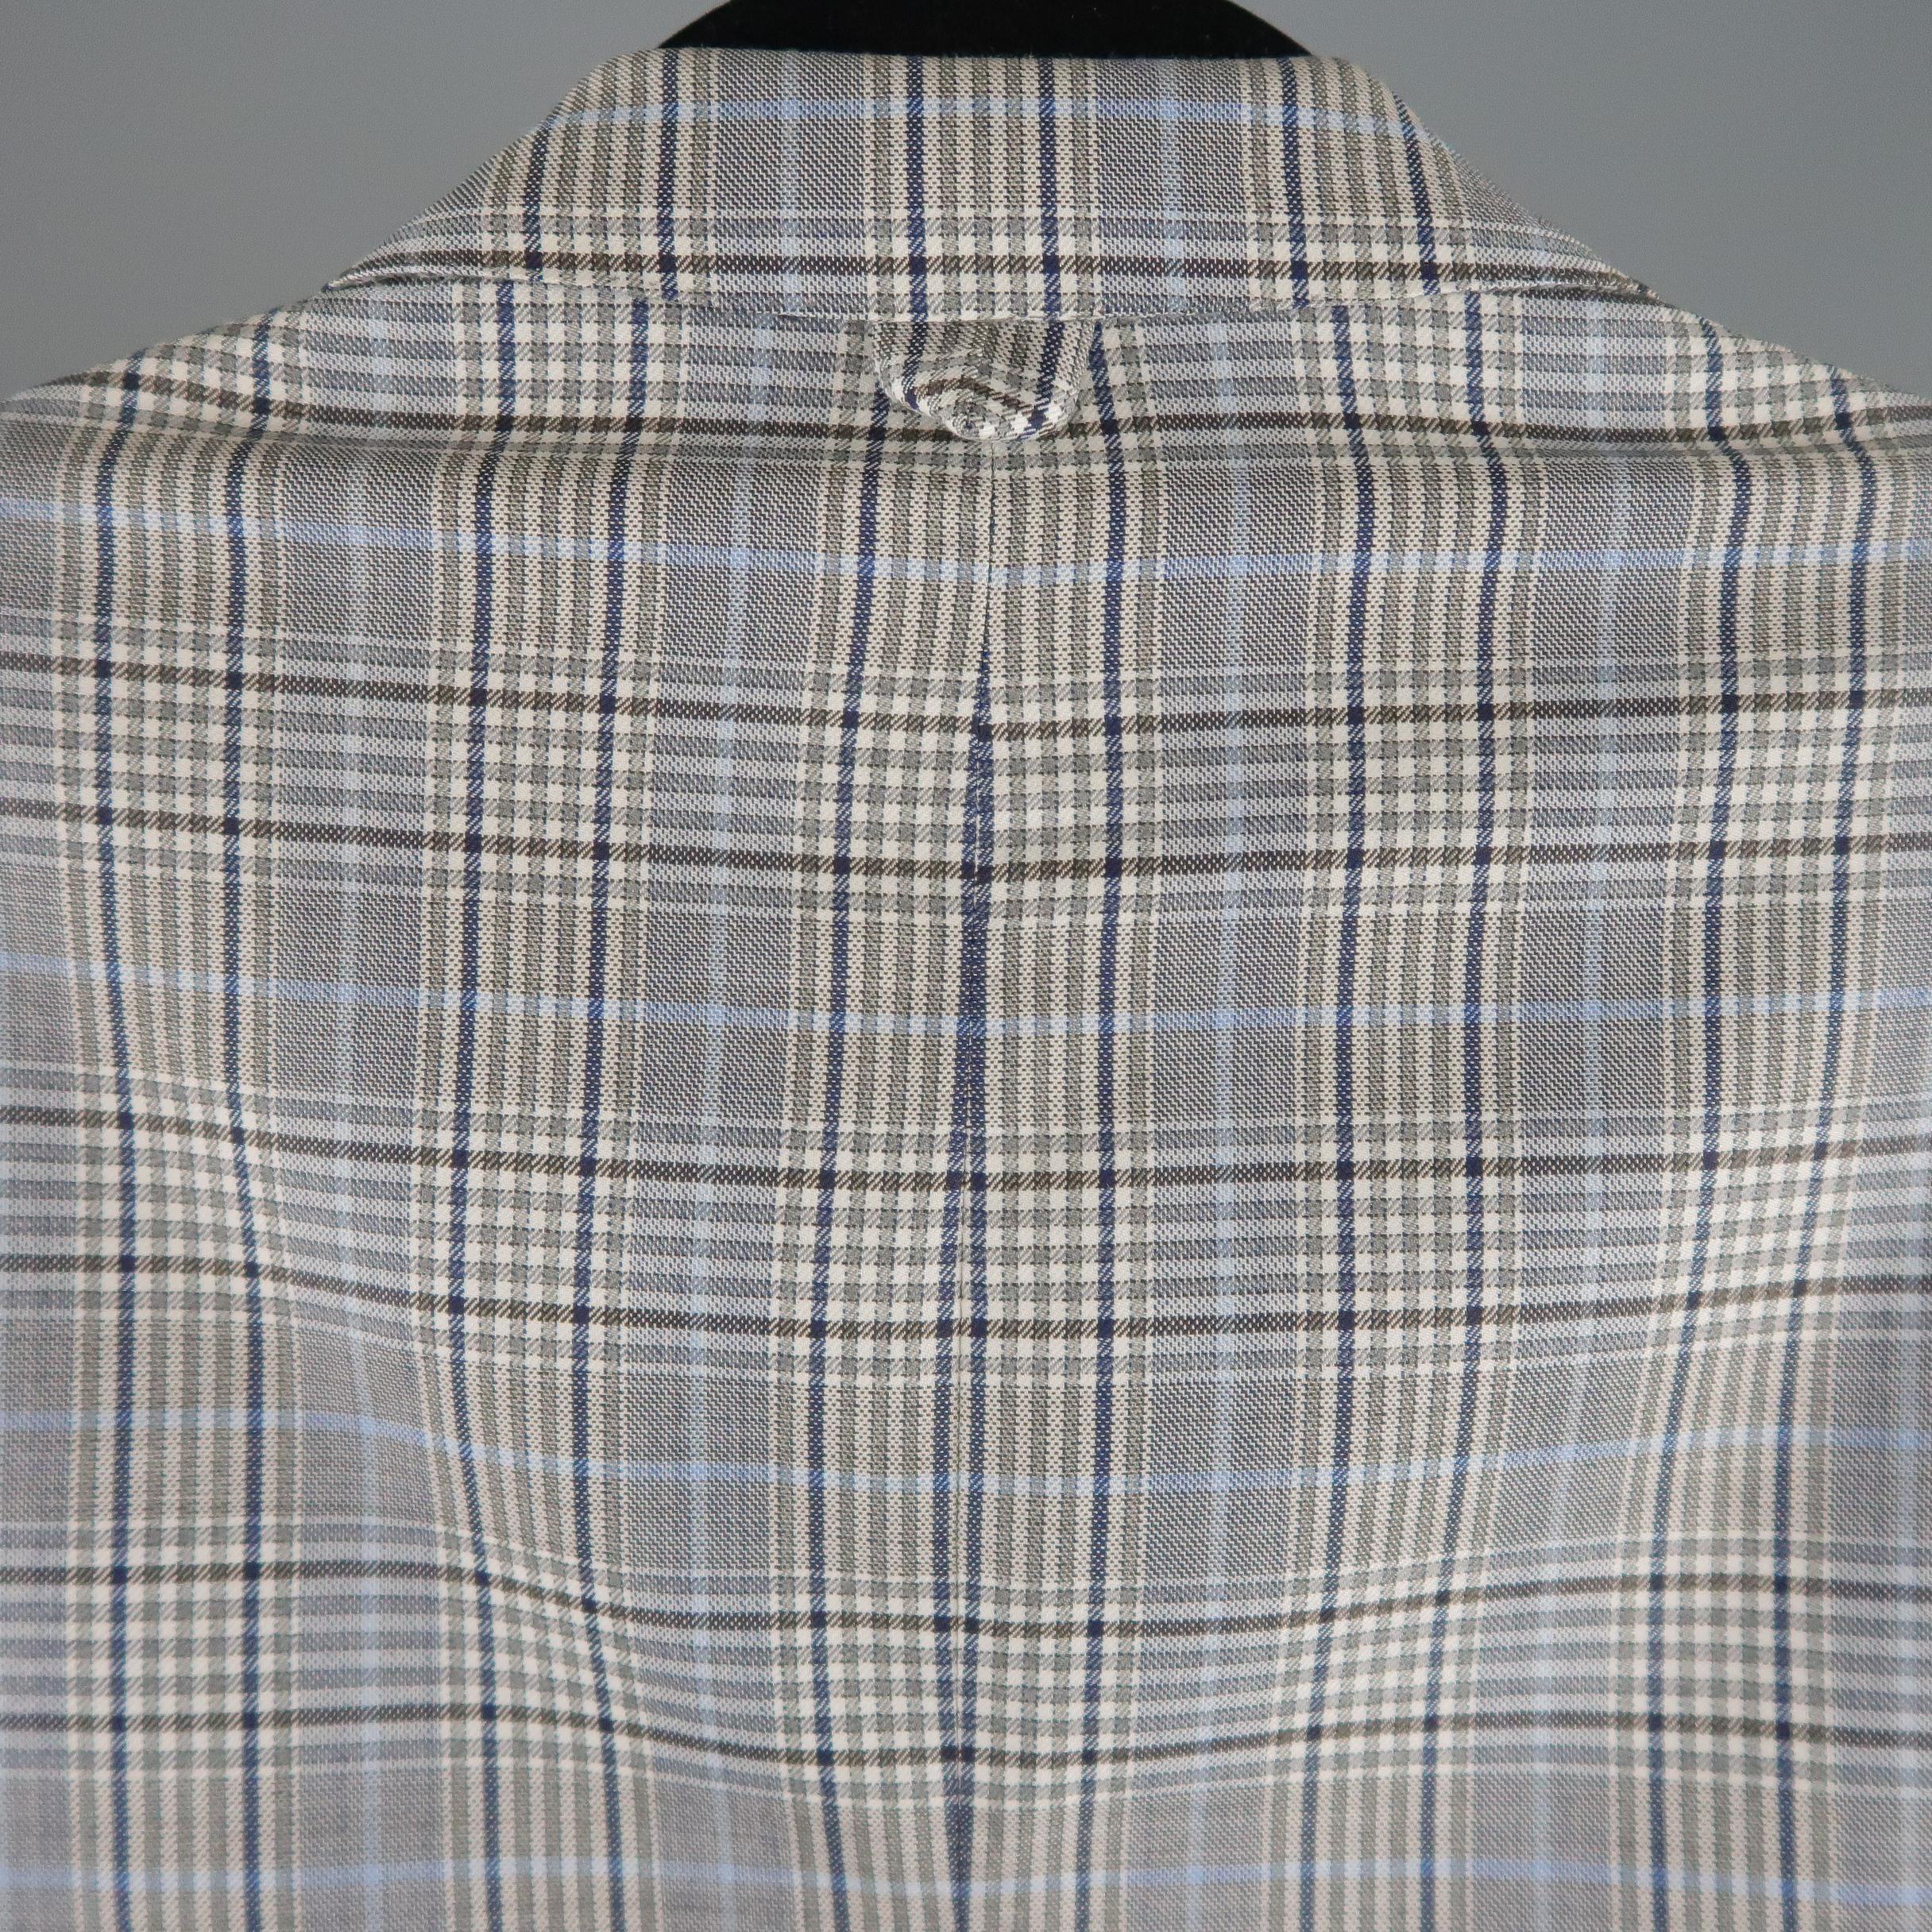 Men's BROOKS BROTHERS 38 Short Gray & Blue Plaid Wool Blend Notch Lapel Suit 4